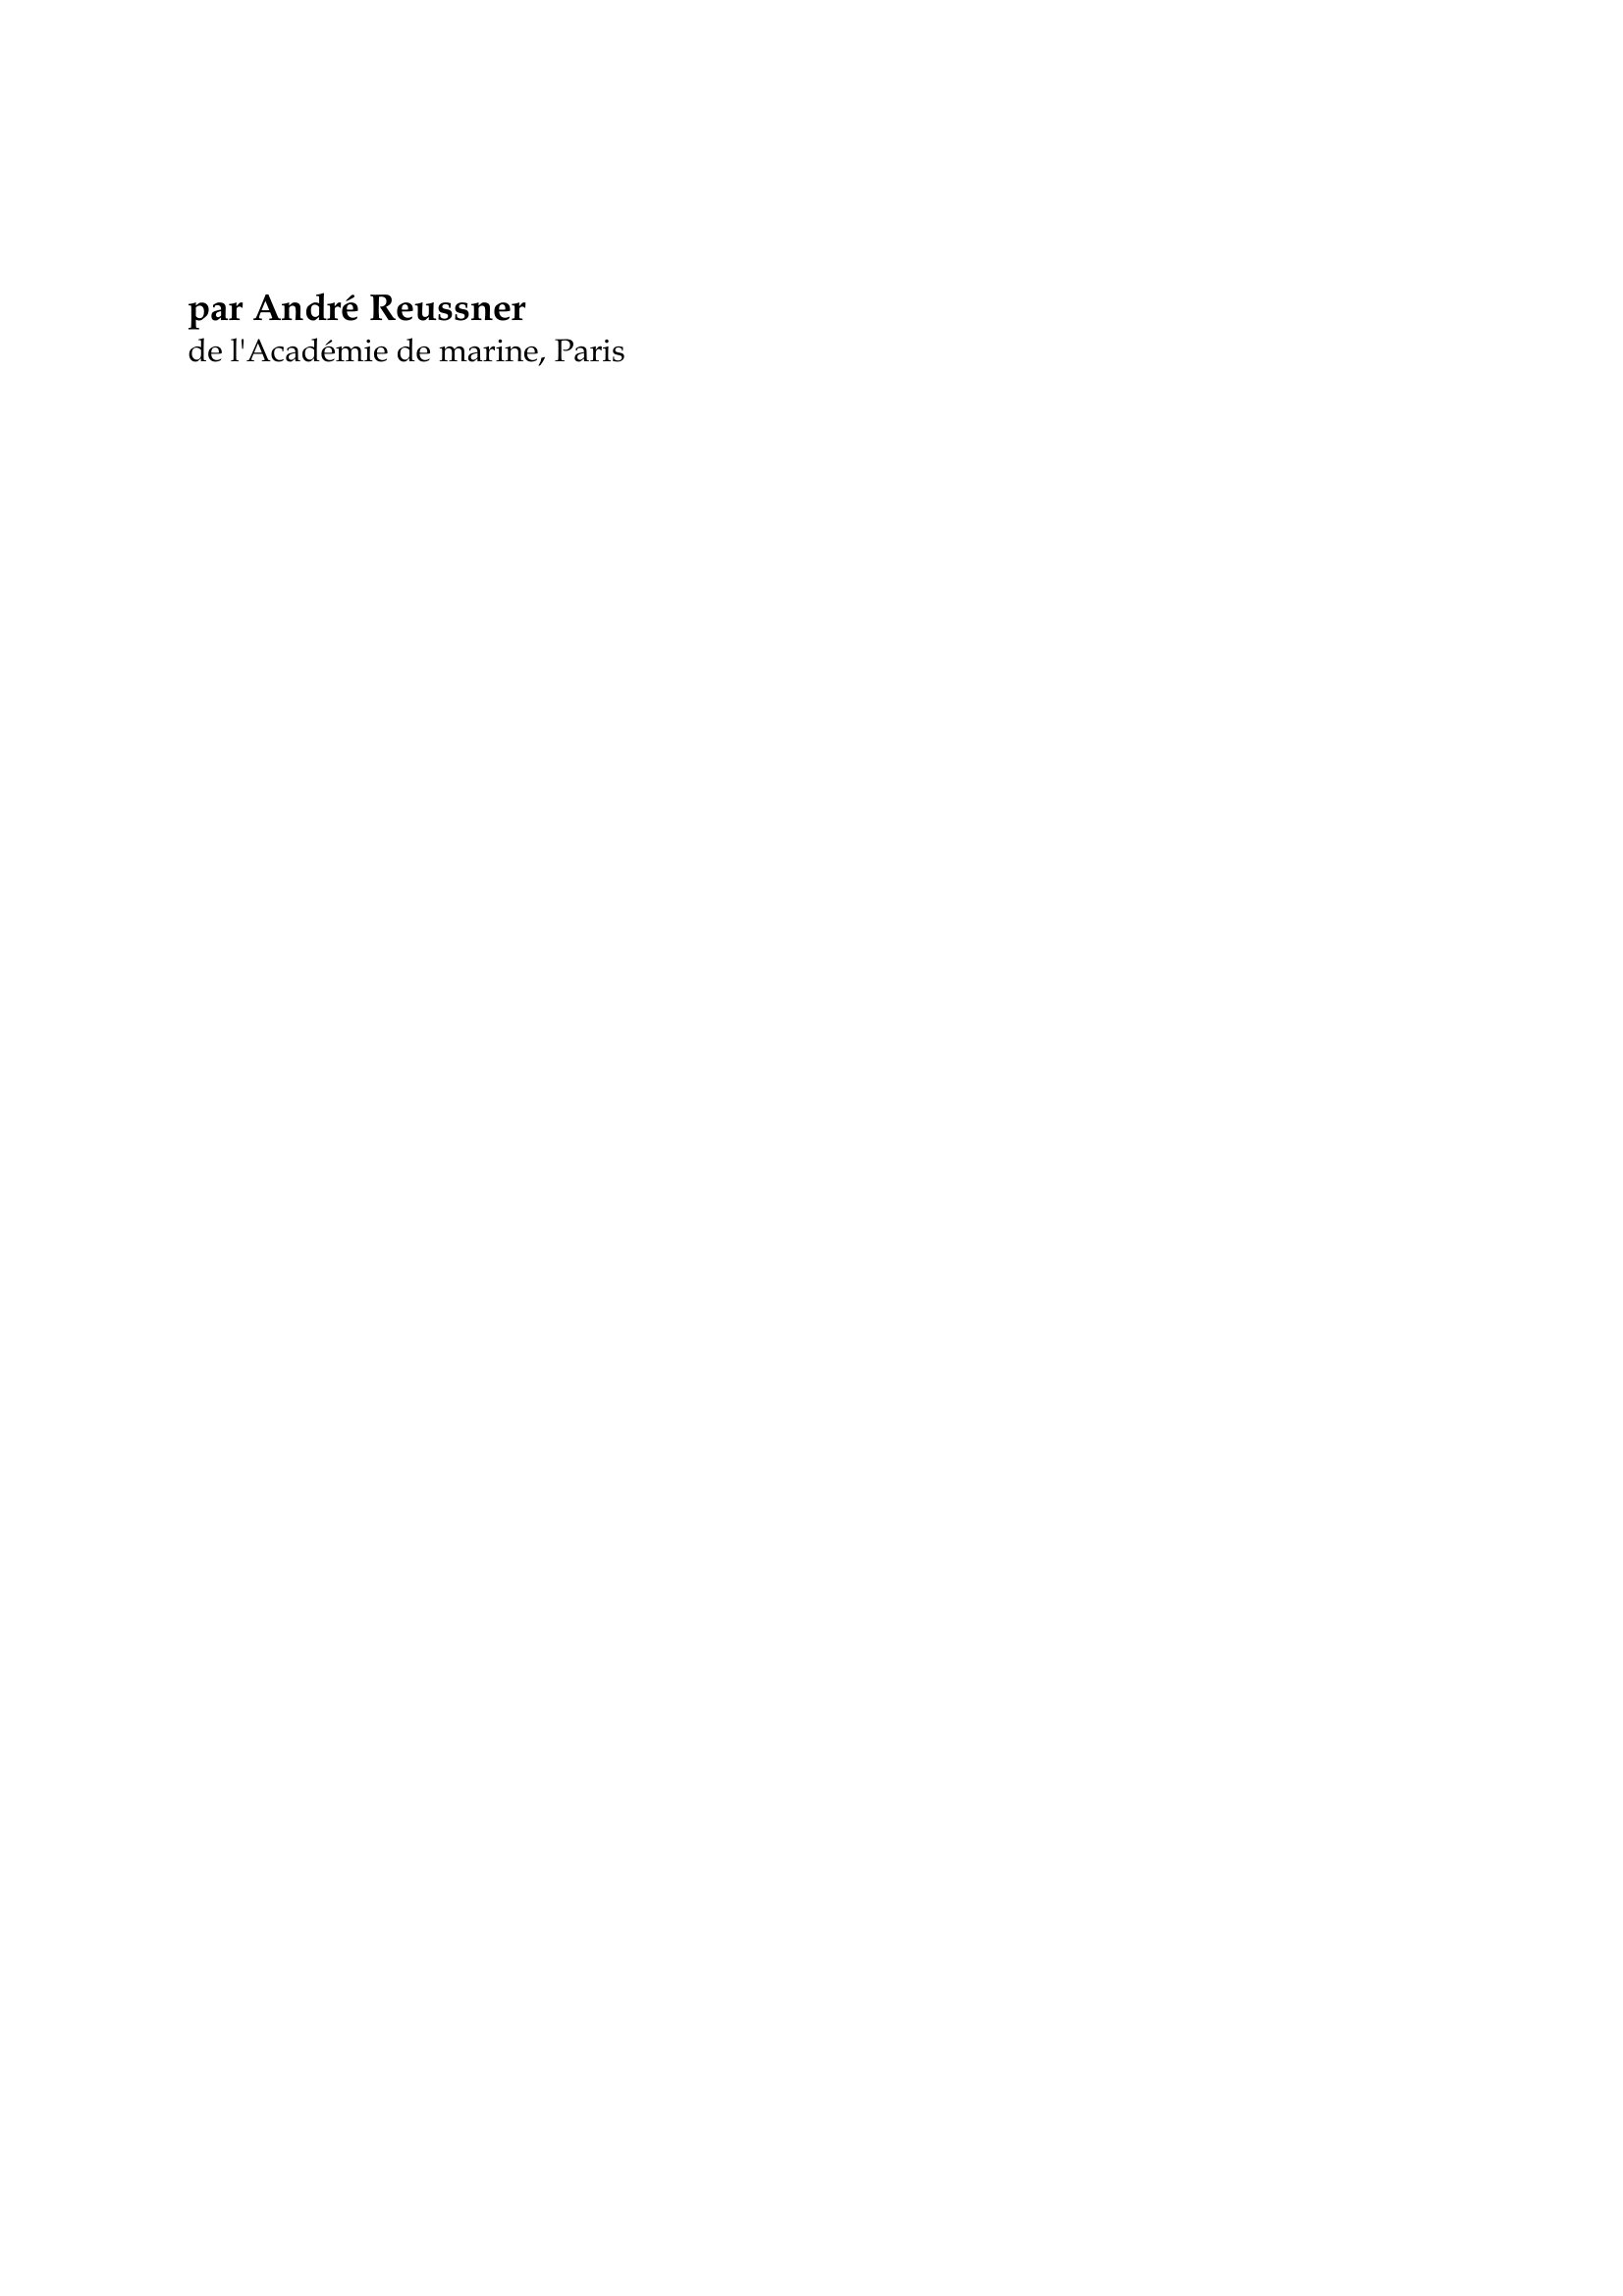 Prévisualisation du document L'exploration océane

par André Reussner
de l'Académie de marine, Paris

Du siècle de